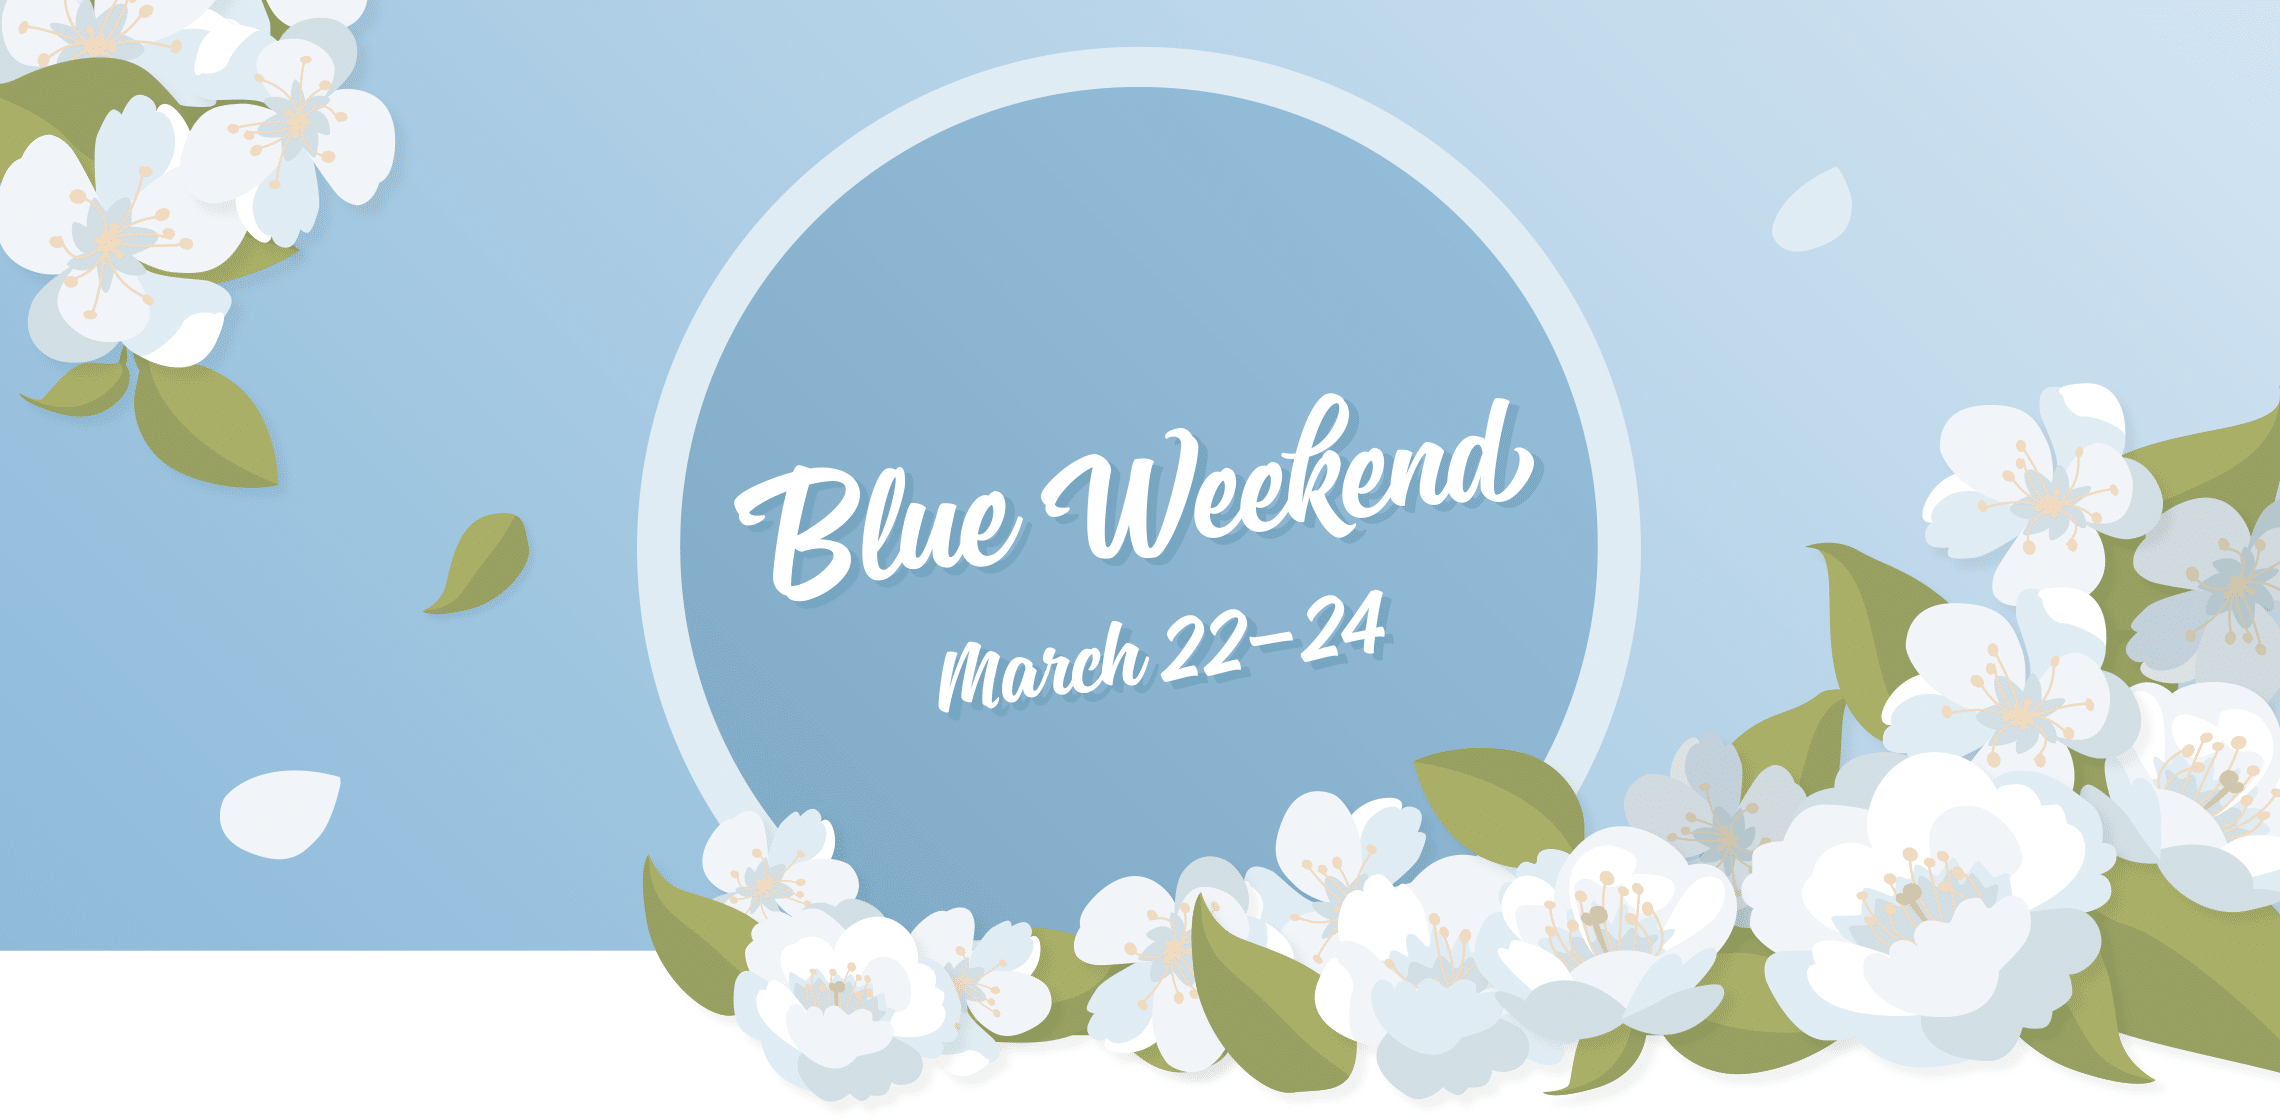 Blue Weekend is HERE!